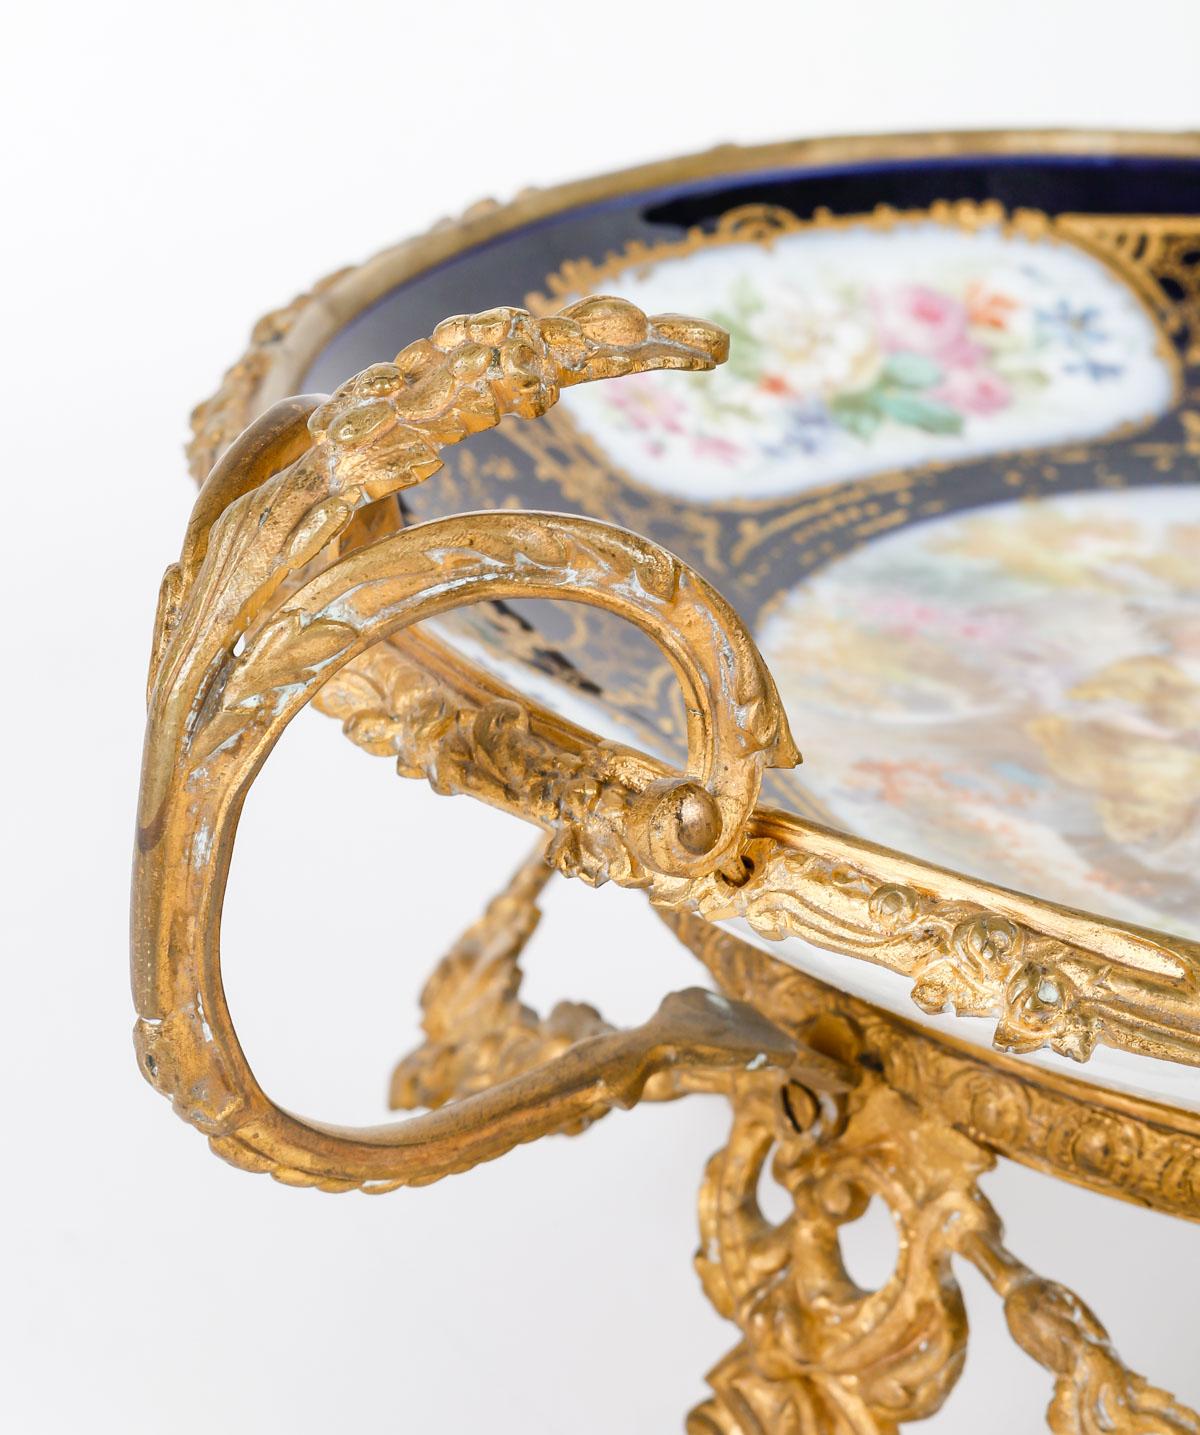 Sèvres Porzellantasse und vergoldete Bronzemontierung, Napoleon III.

Porzellanschale aus Sèvres, 19. Jahrhundert, mit vergoldeter Bronzemontierung, Periode Napoleon III.
h: 17cm, l: 37cm, p: 30cm

